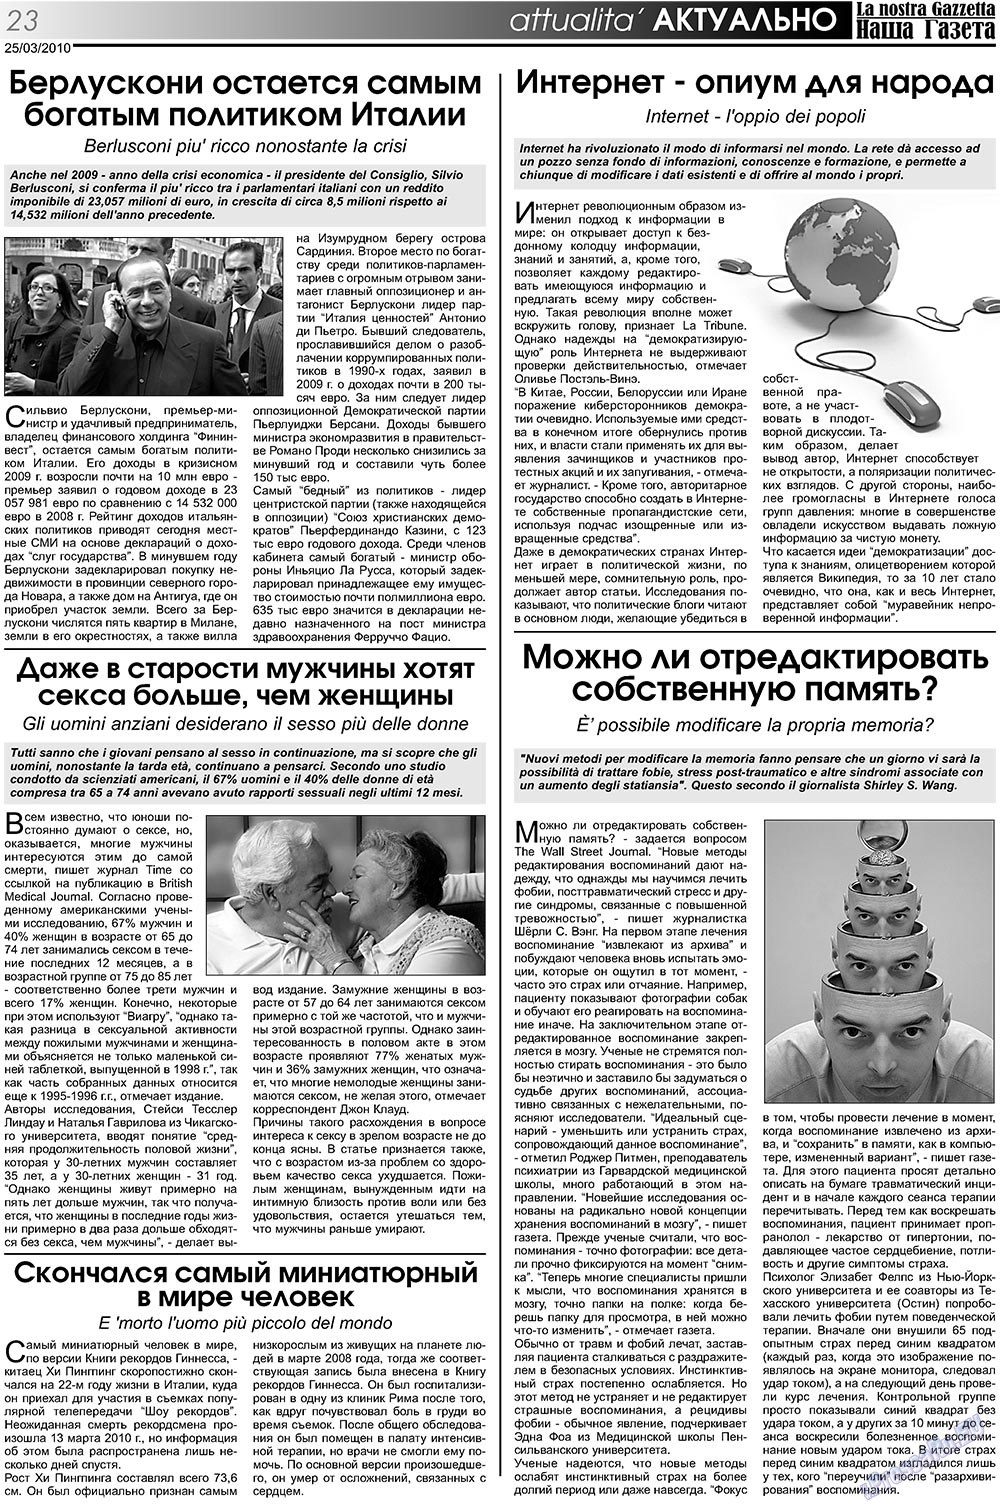 Наша Газета Италия, газета. 2010 №105 стр.23